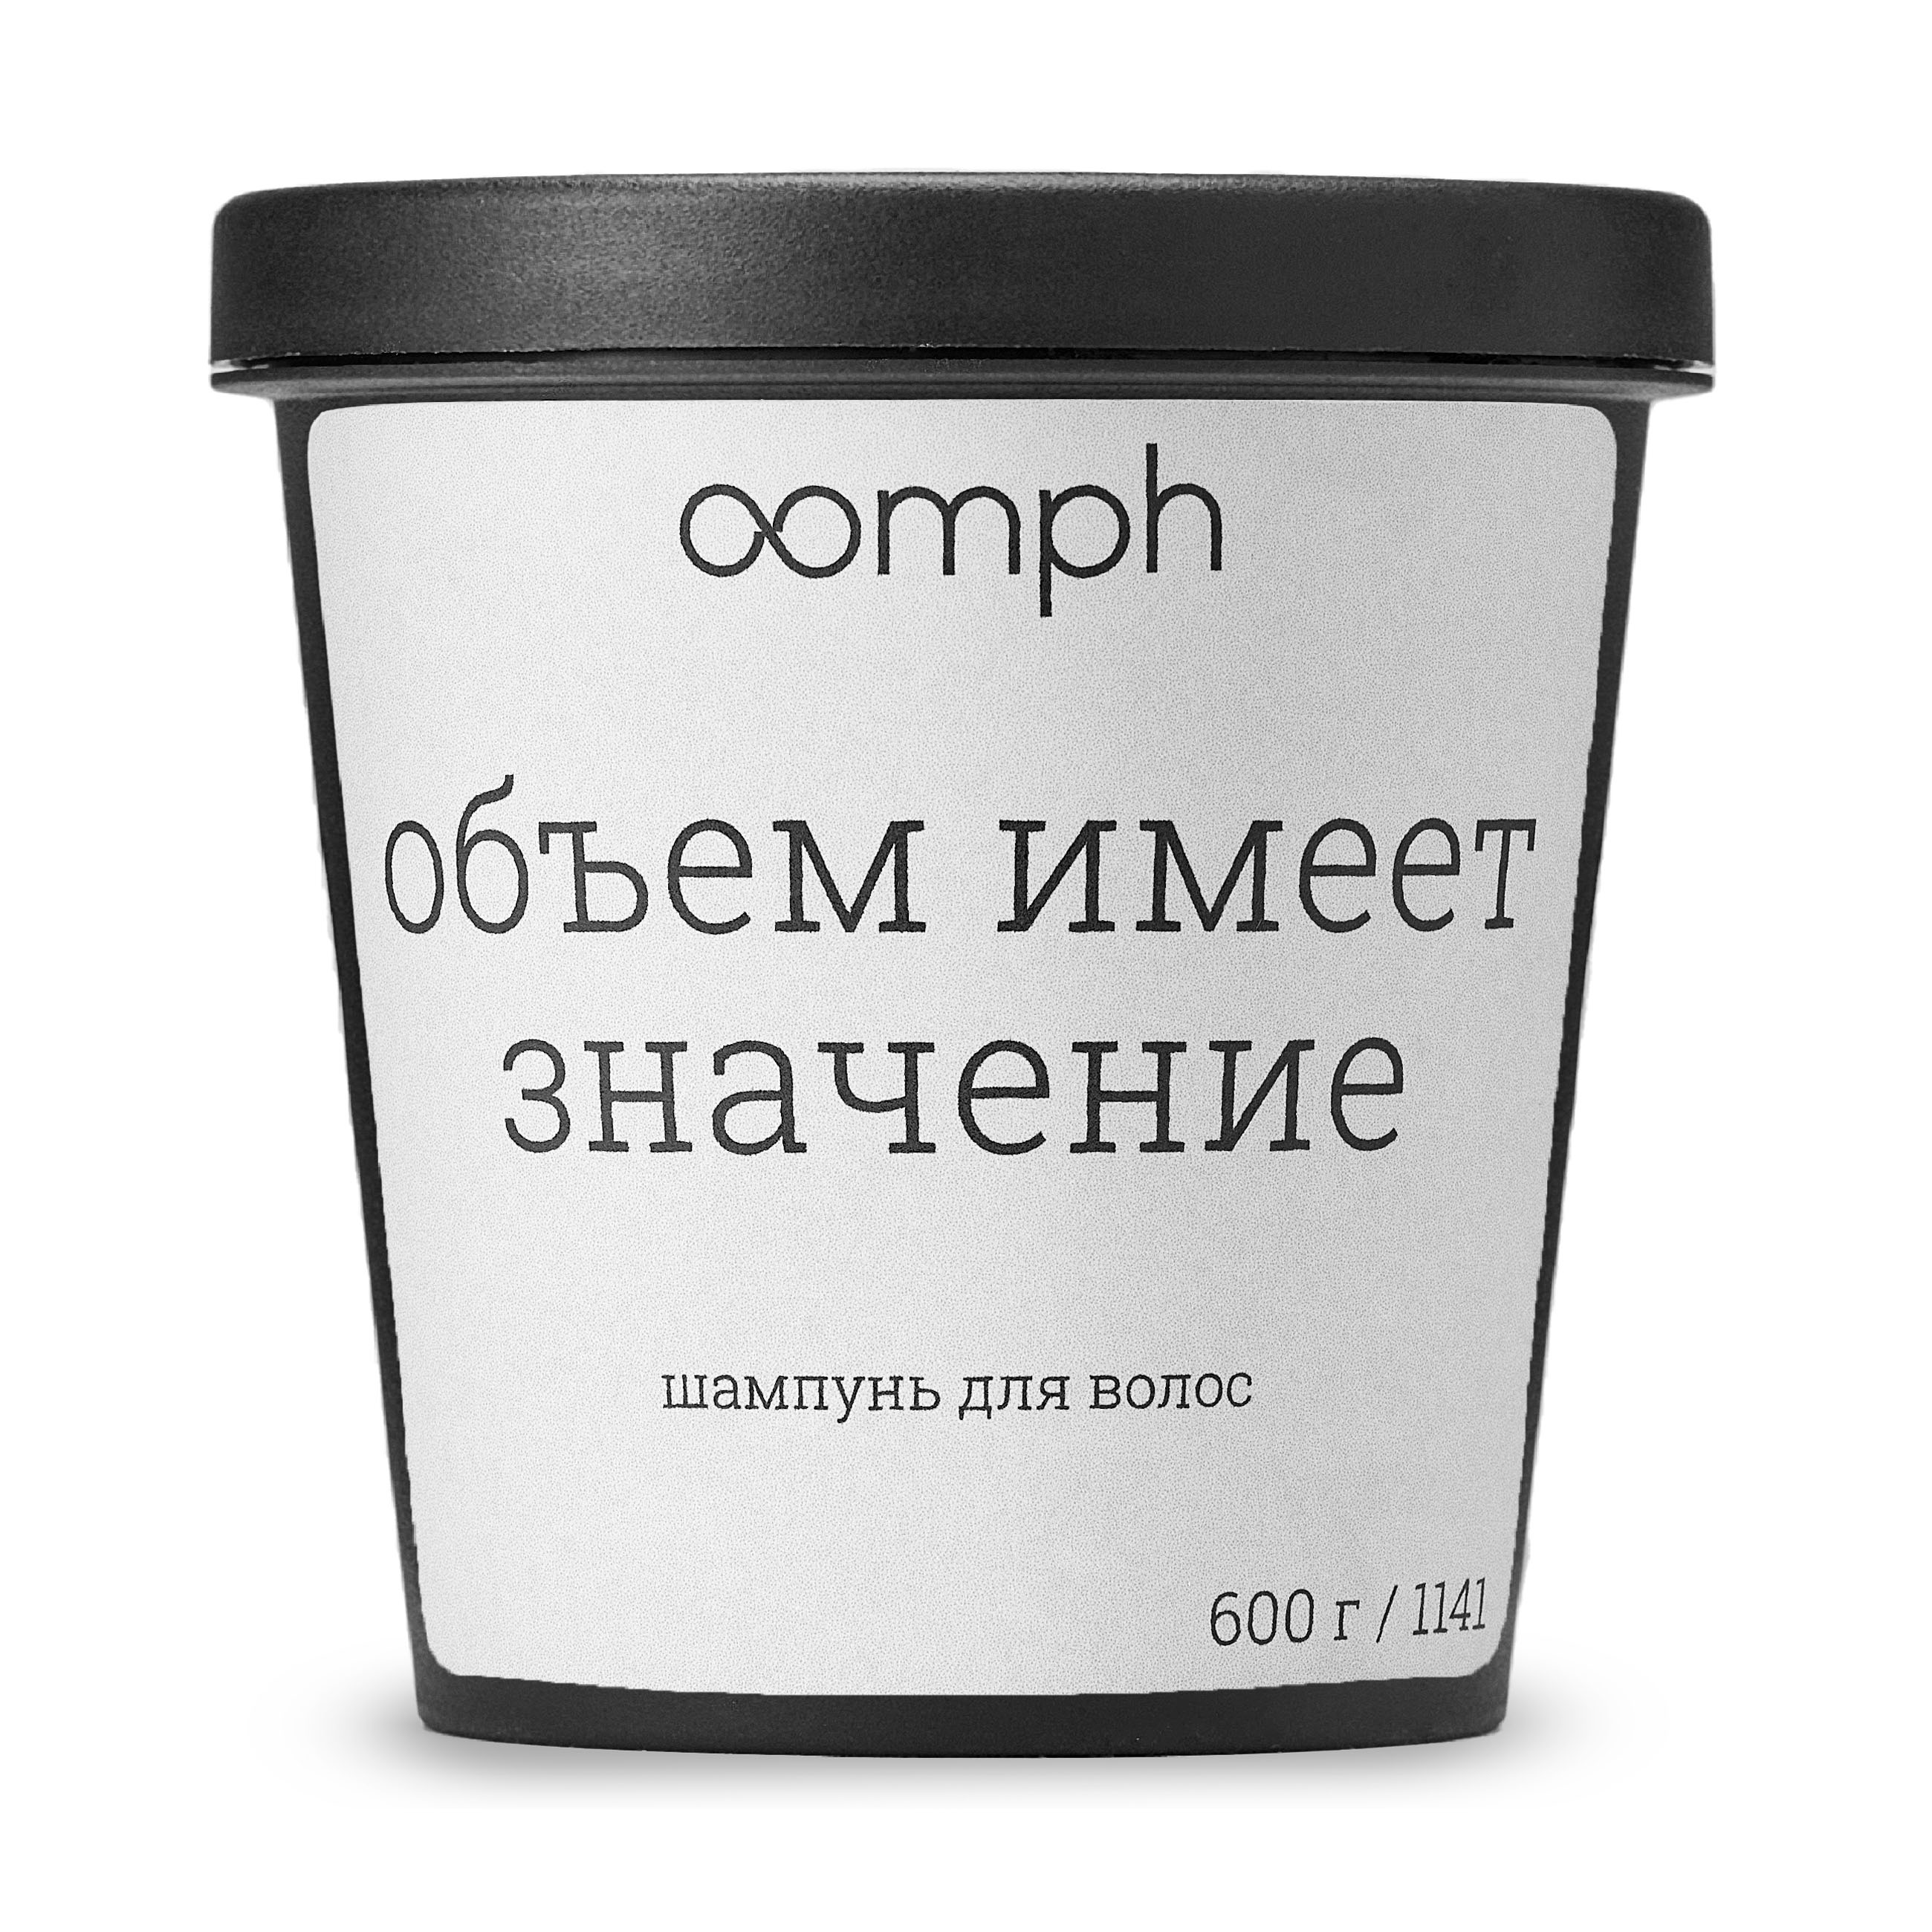 Шампунь для волос OOMPH Объем имеет значение 600г эдуард лимонов